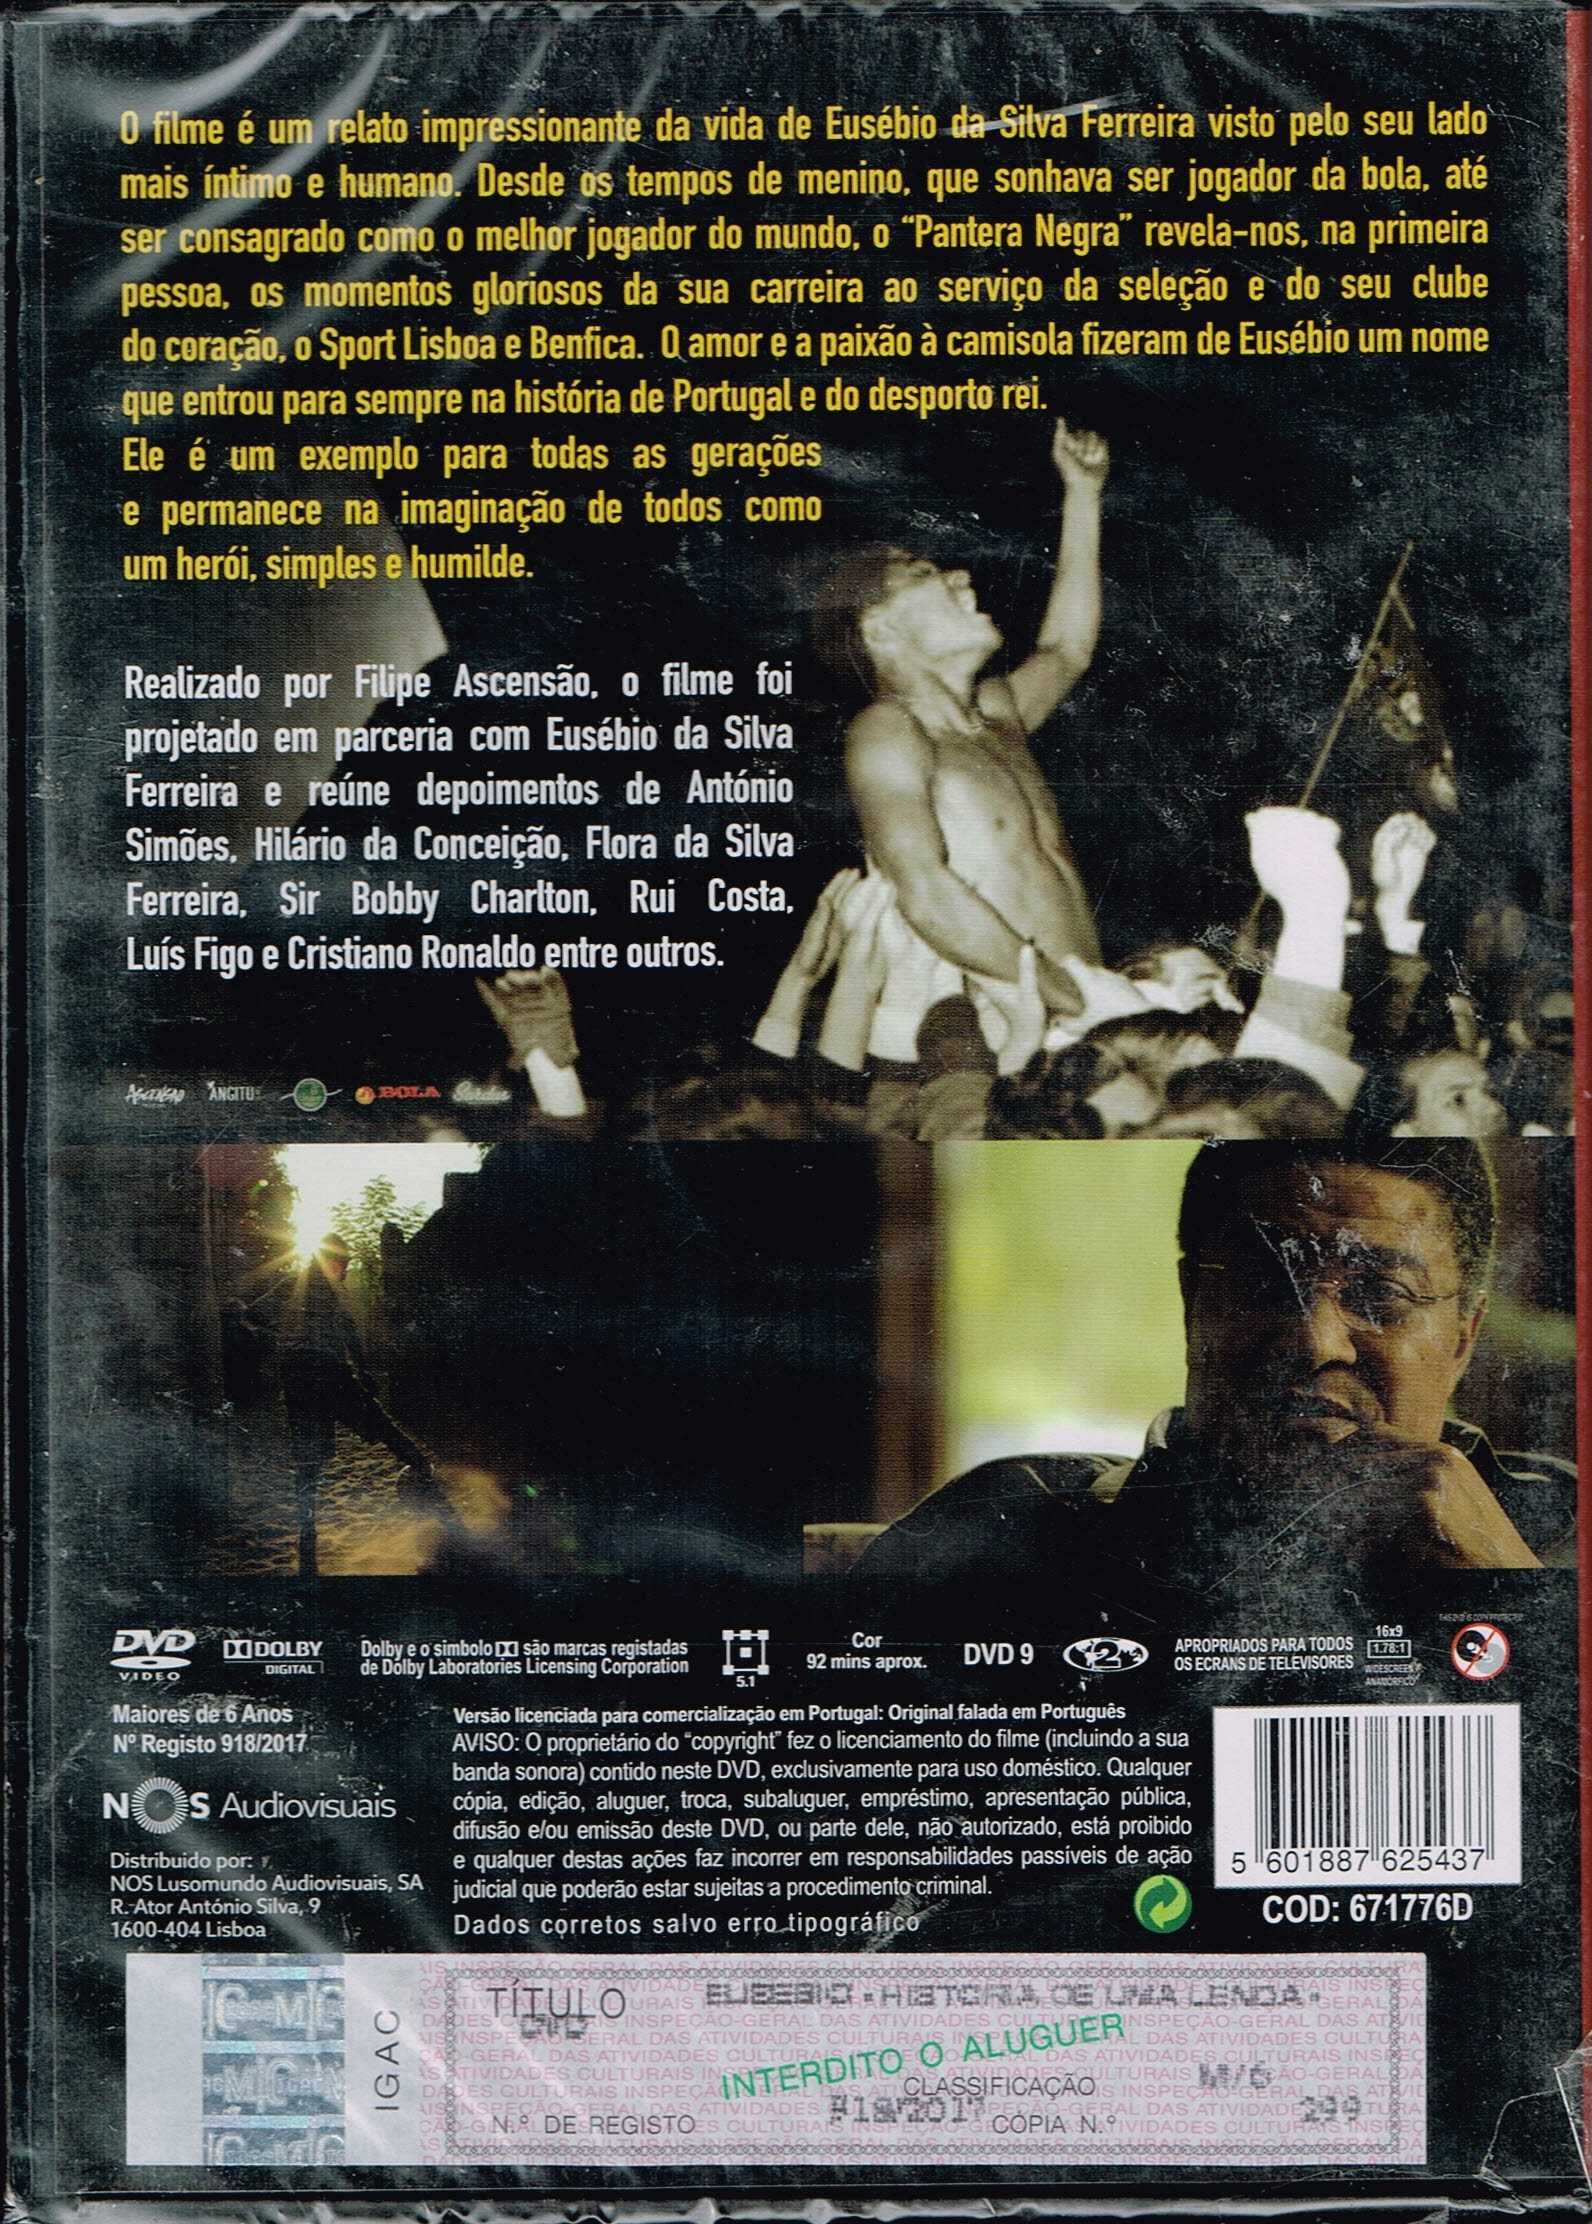 DVD: Eusébio História de Uma Lenda - NOVO! SELADO!